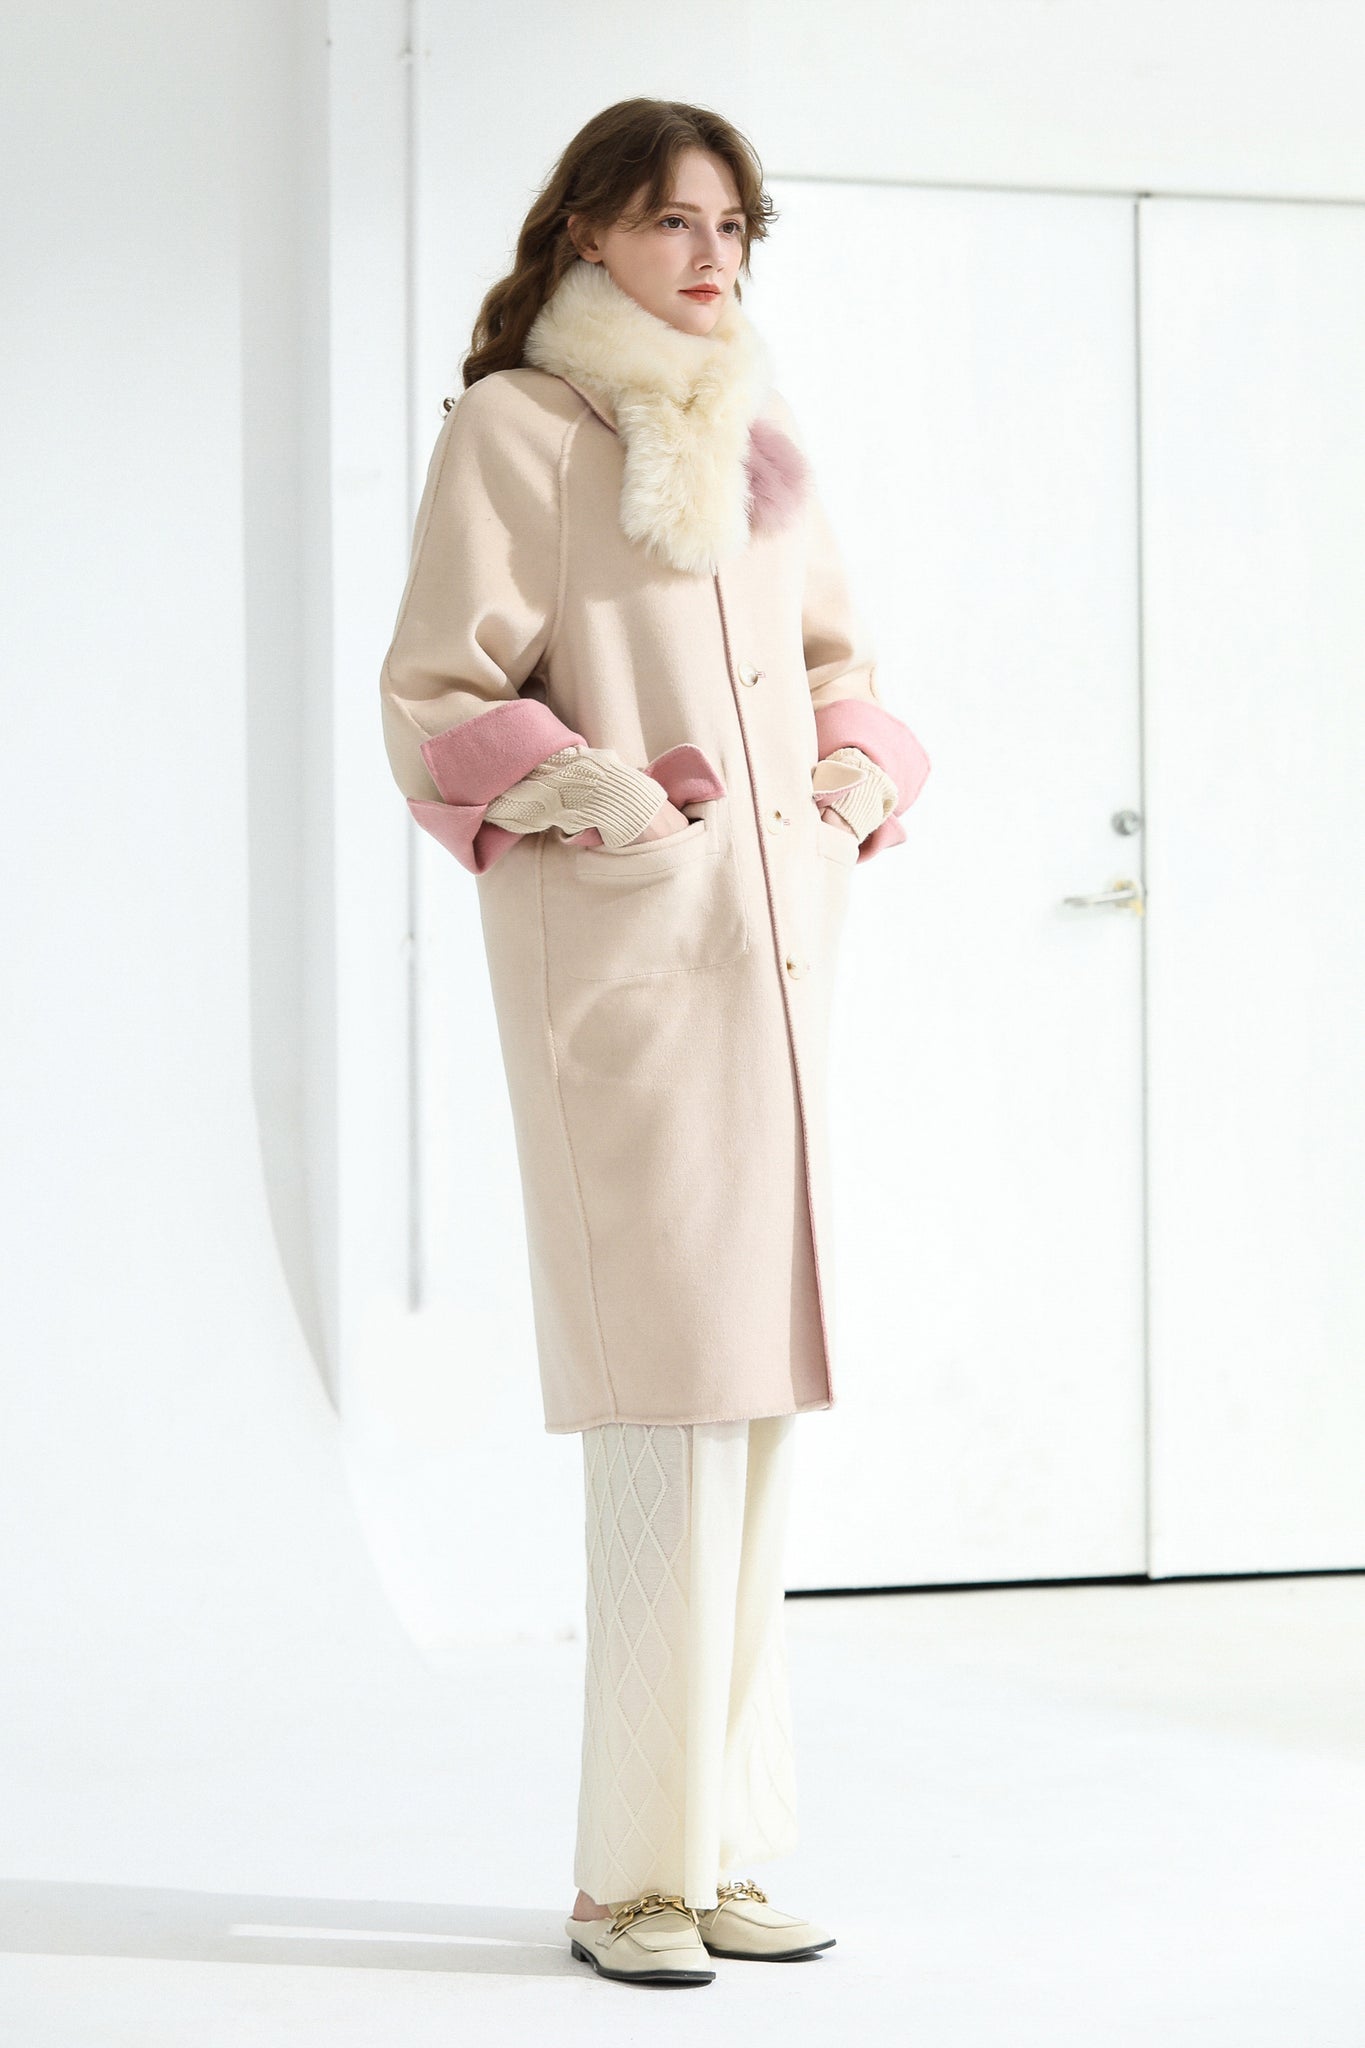 Fangyan | Annette Pink Double Side Wool Coat